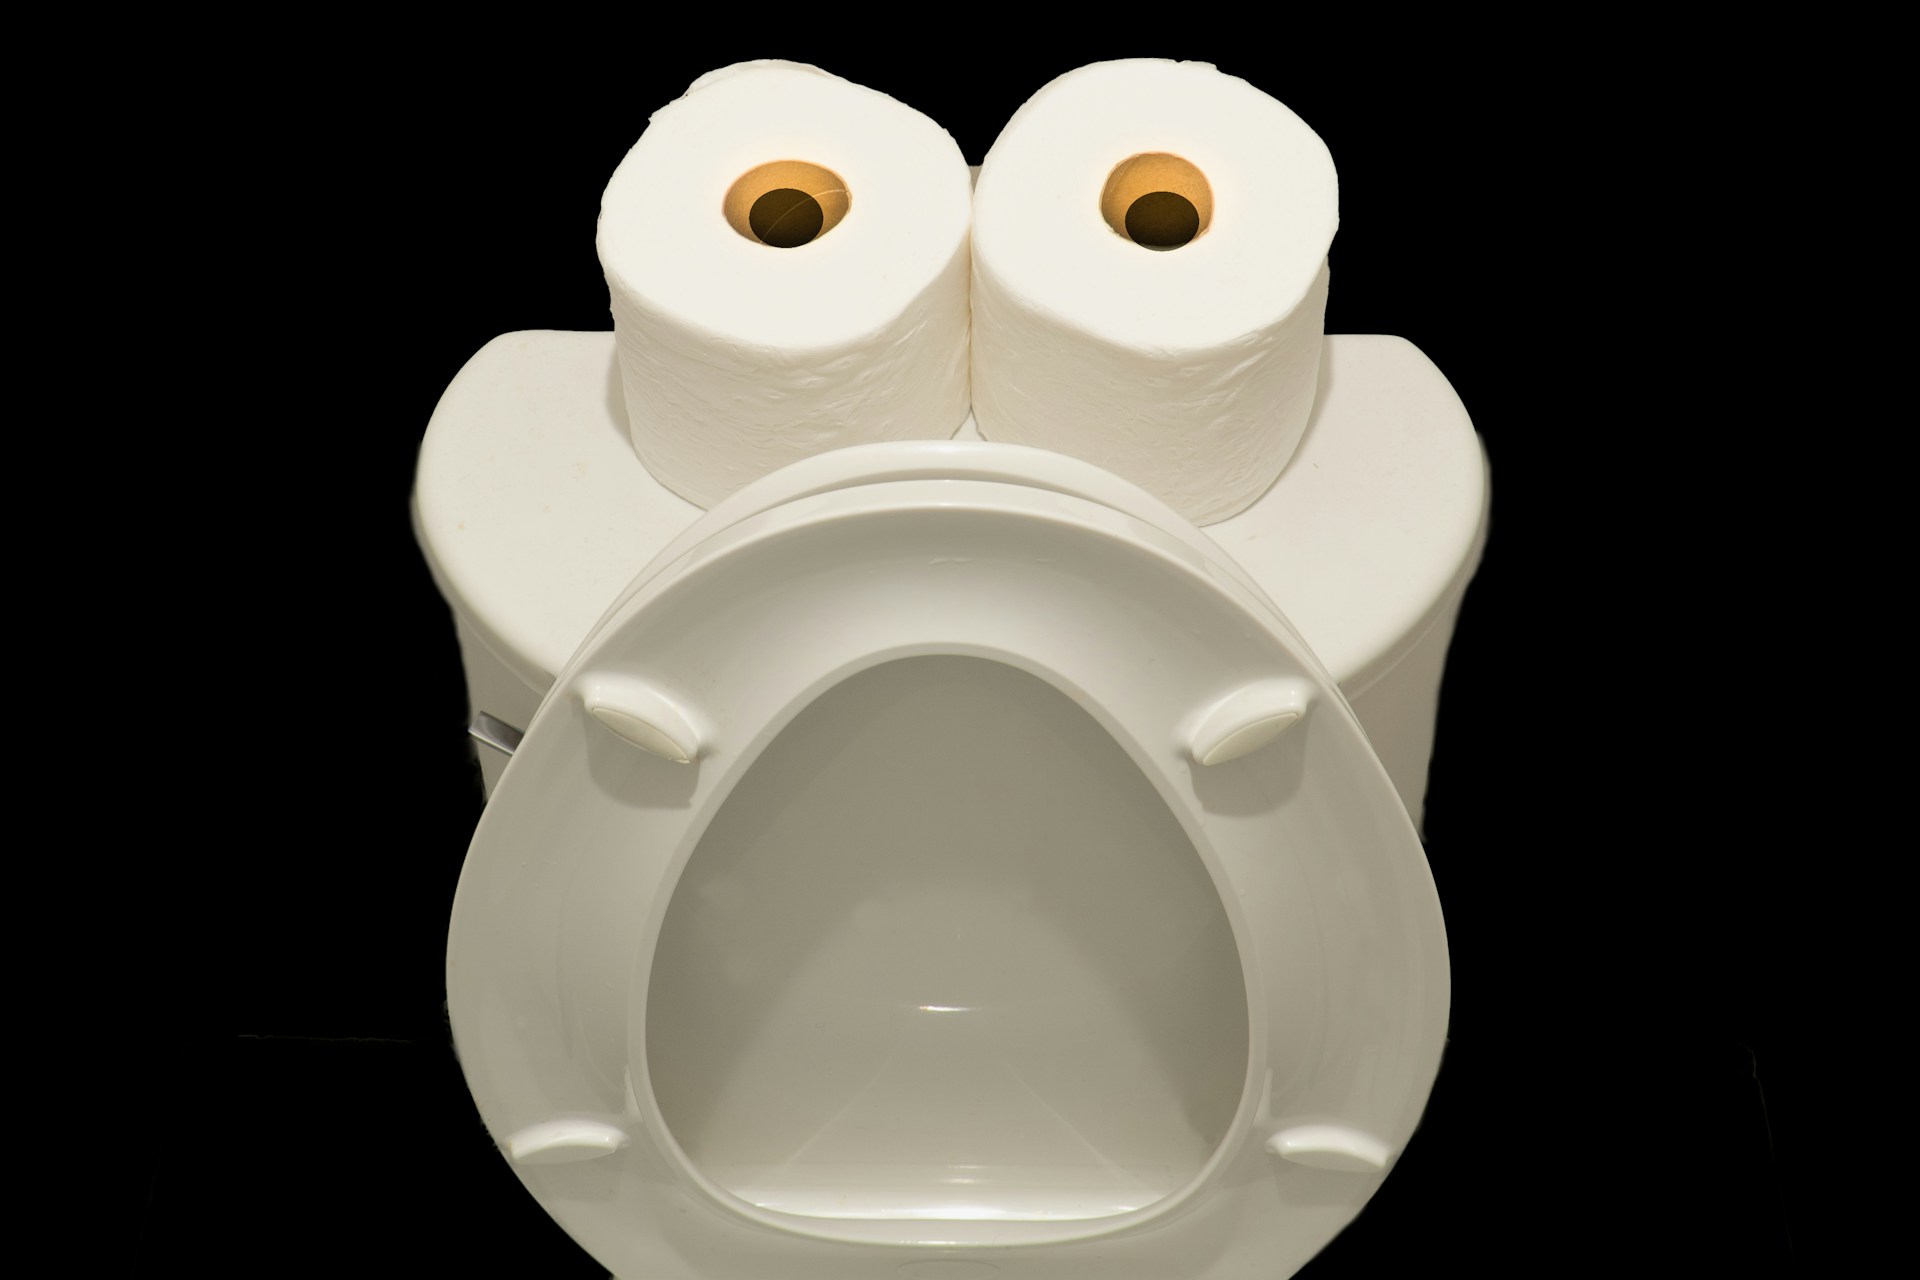 Ein Bild von einer Toilette, deren Deckel aufgeklappt ist und auf der zwei Rollen Toilettenpapier stehen, so dass sich ein staunender Gesichtsausdruck hineininterpretieren lässt.